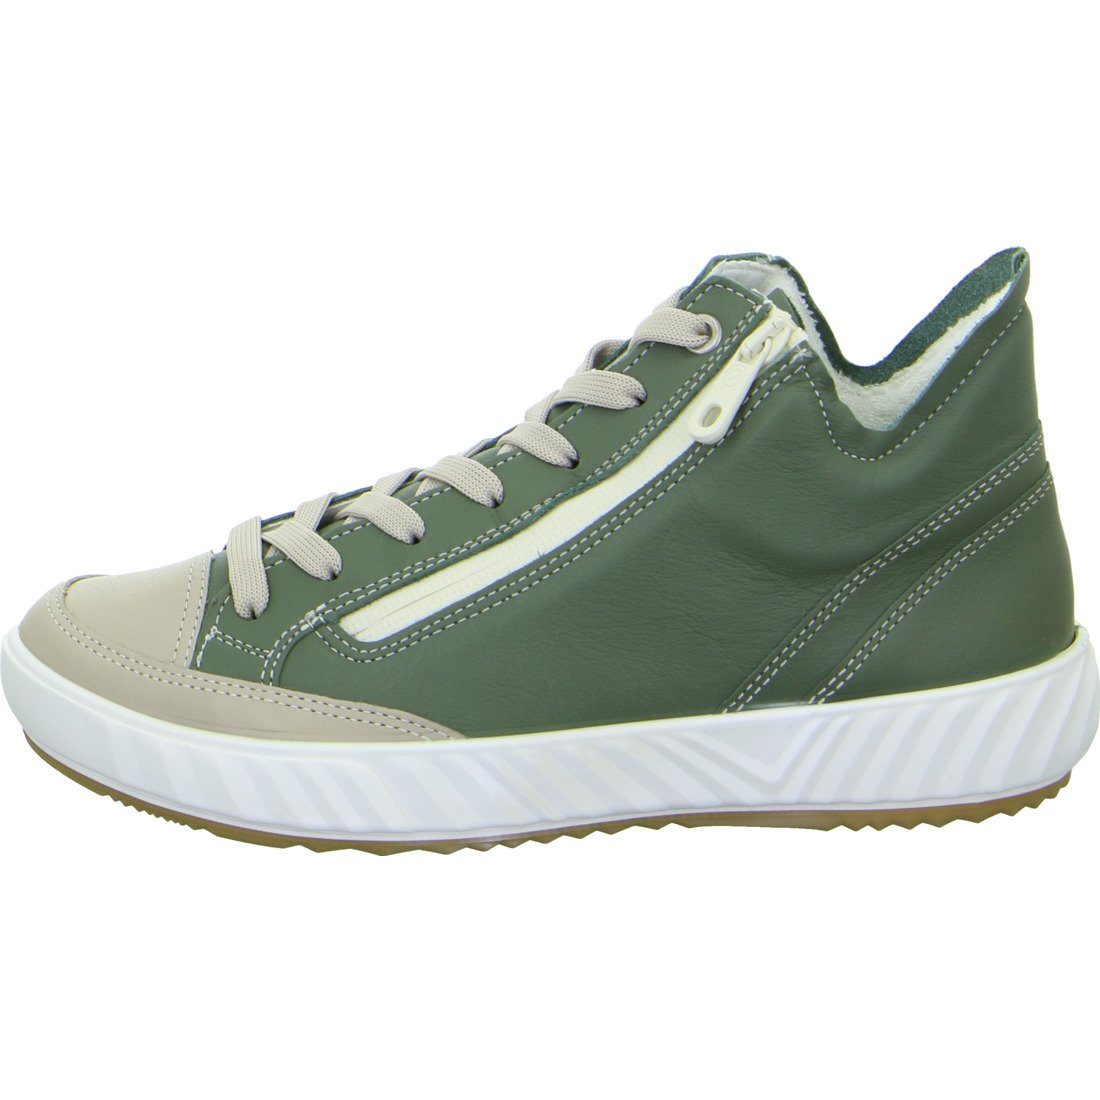 Ara Ara Schuhe, Sneaker 047892 grün Damen - Avio Glattleder Sneaker